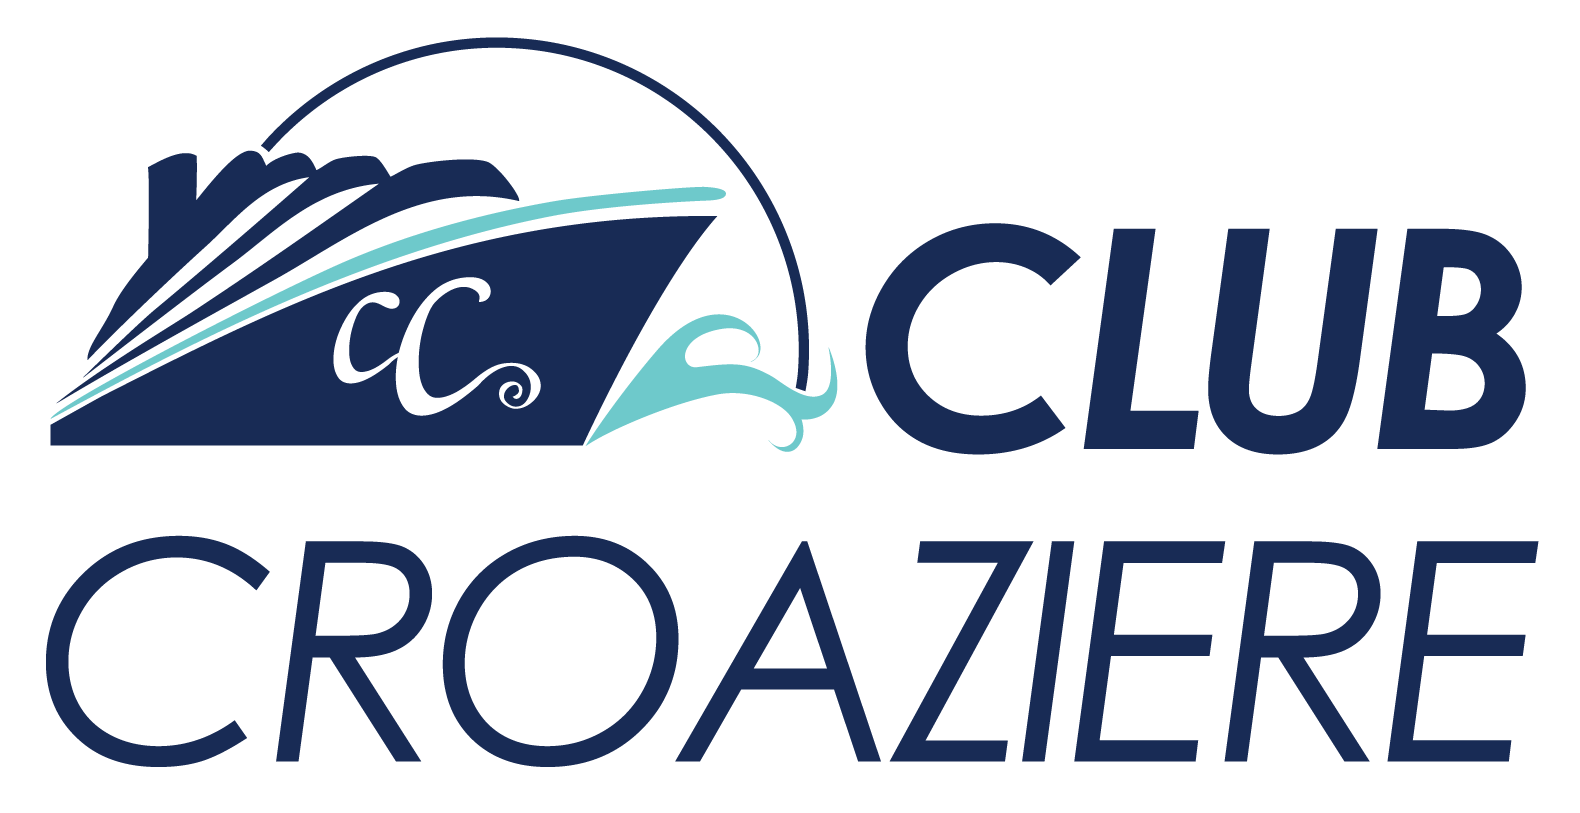 Club Croaziere